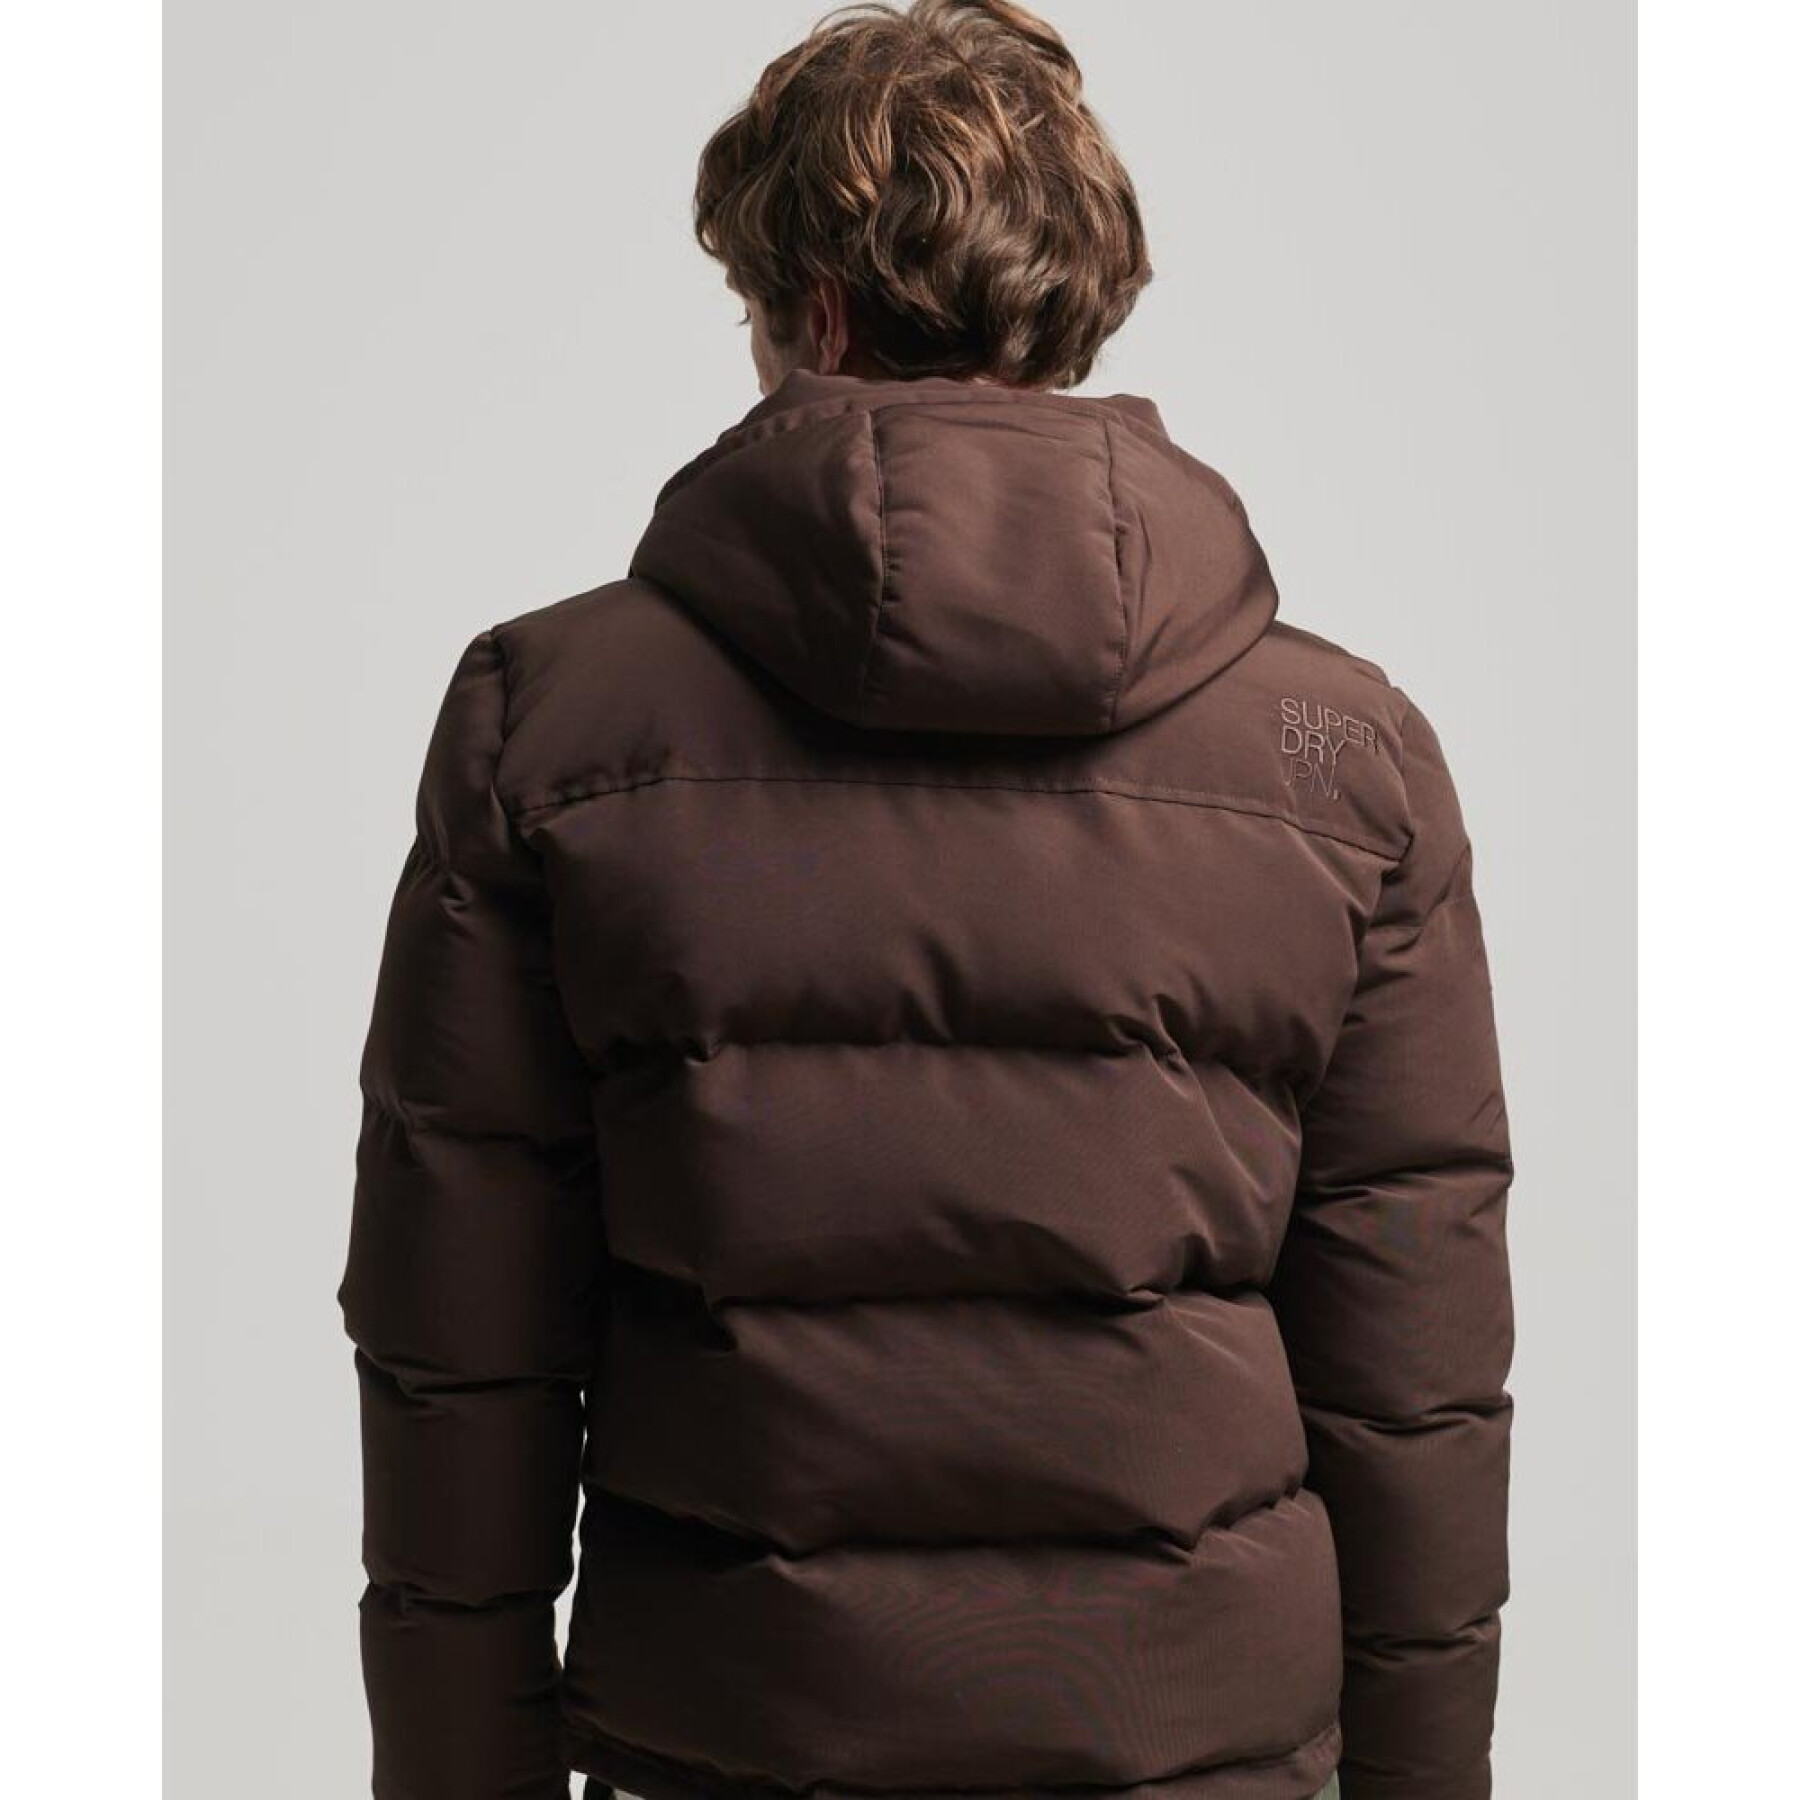 Hooded jacket Superdry Everest